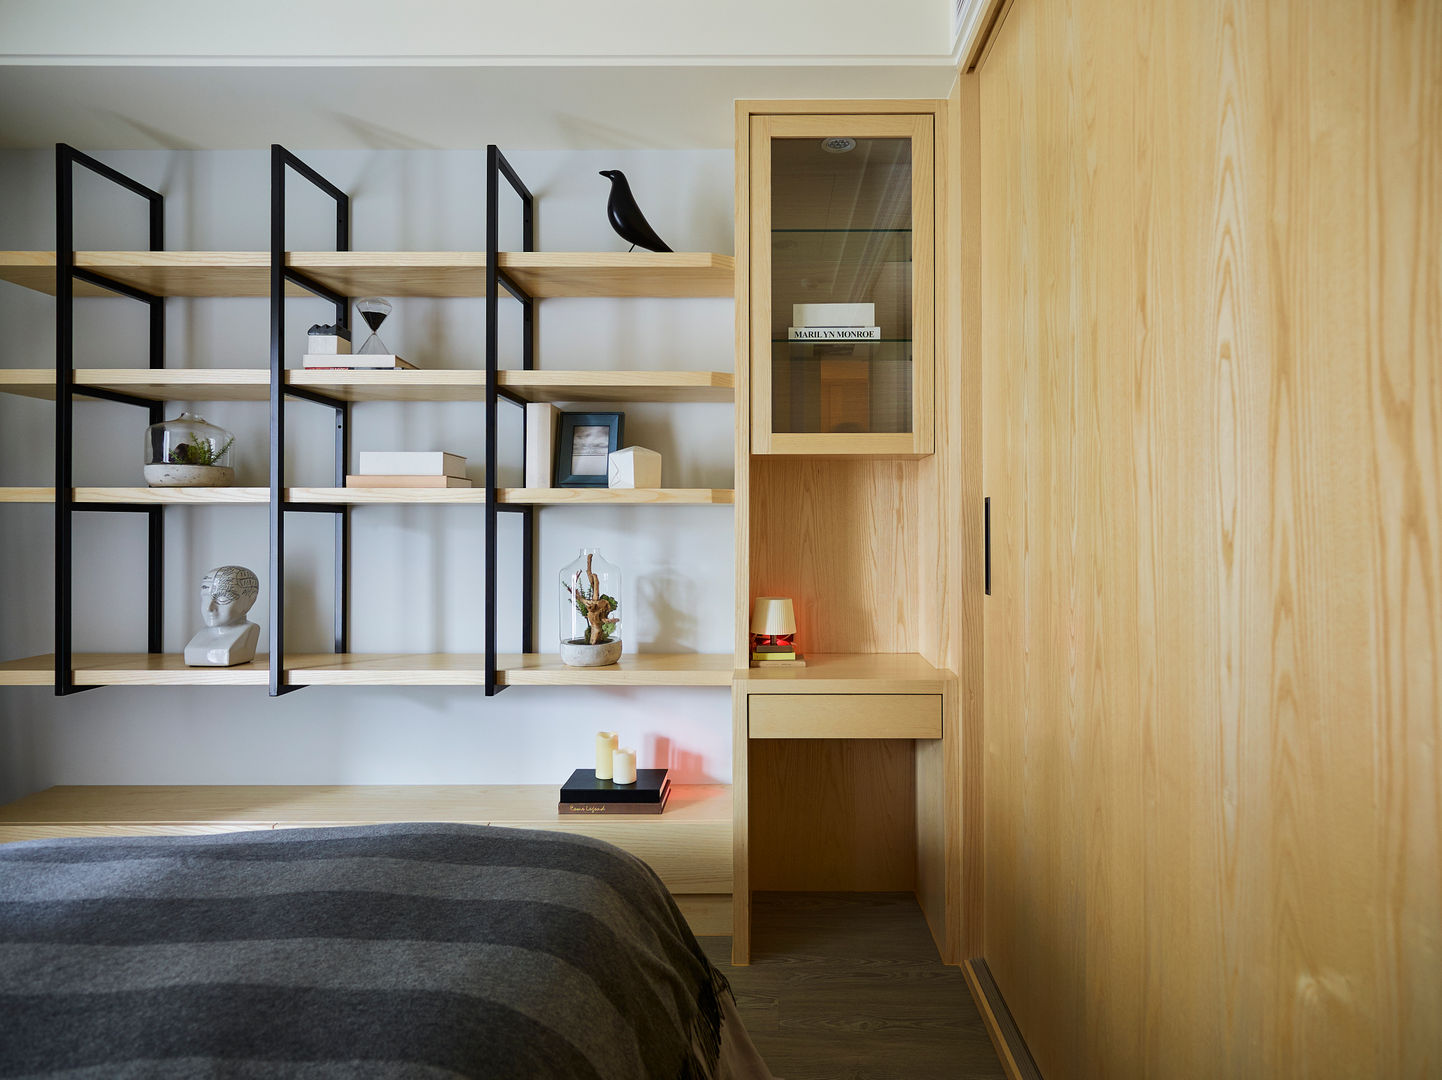 靜、穩, 群築室內裝修設計有限公司 群築室內裝修設計有限公司 Eclectic style bedroom